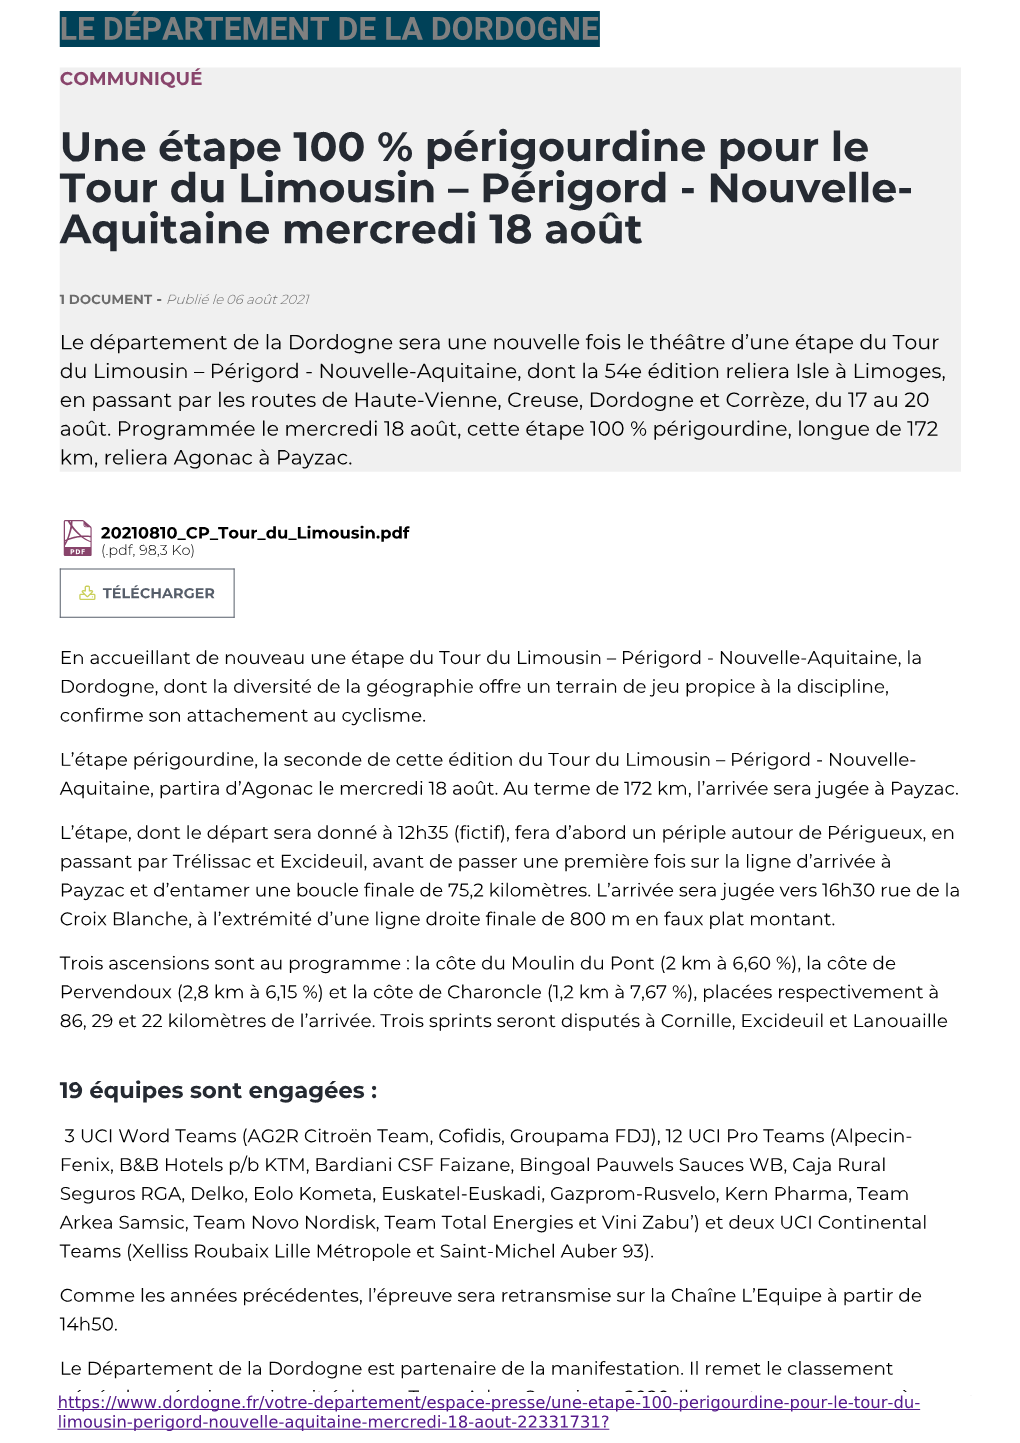 Une Étape 100 % Périgourdine Pour Le Tour Du Limousin – Périgord - Nouvelle- Aquitaine Mercredi 18 Août